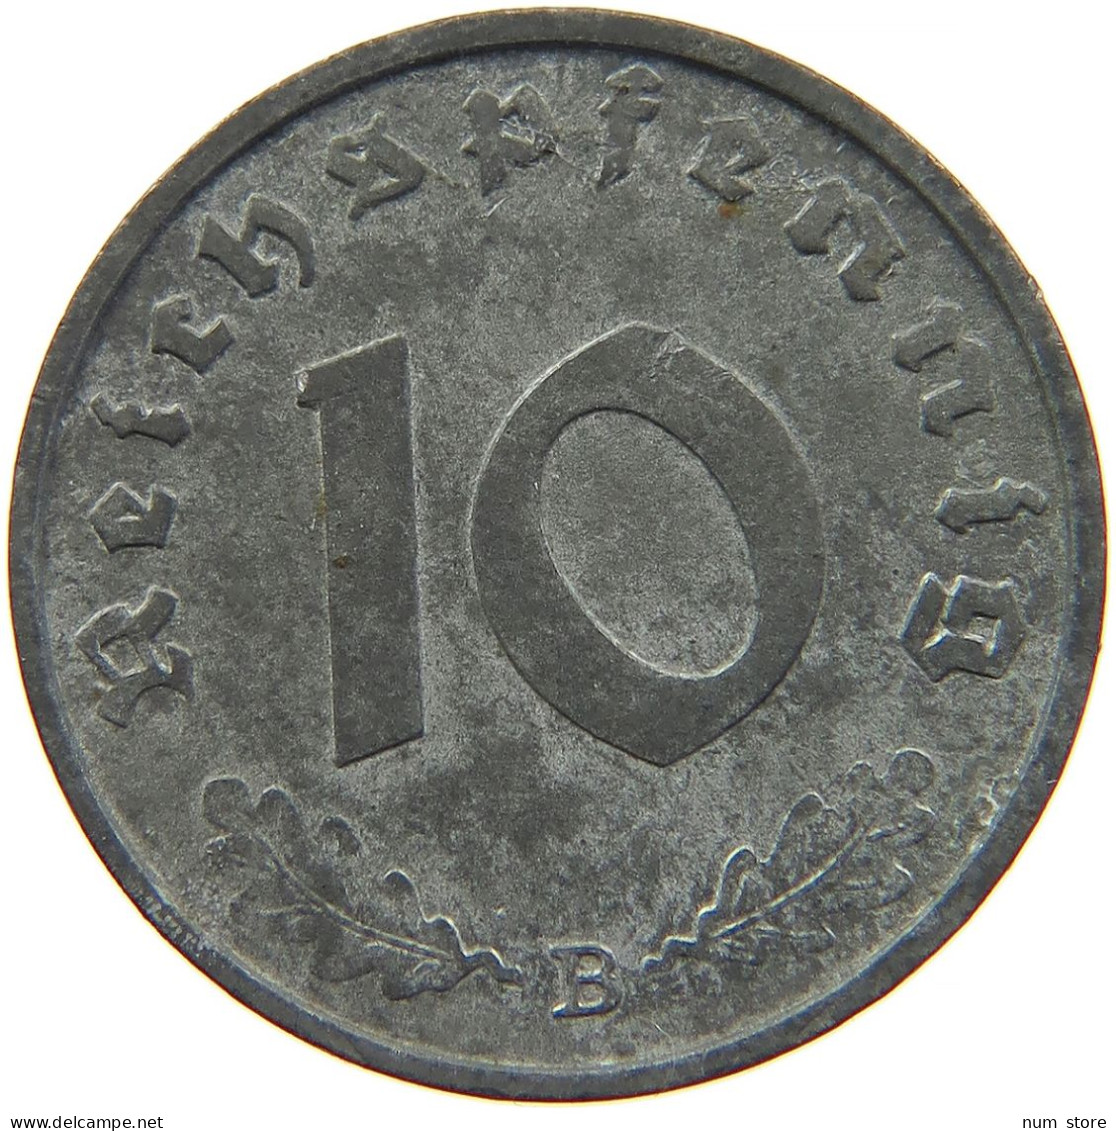 GERMANY 10 REICHSPFENNIG 1943 B #s095 0005 - 10 Reichspfennig